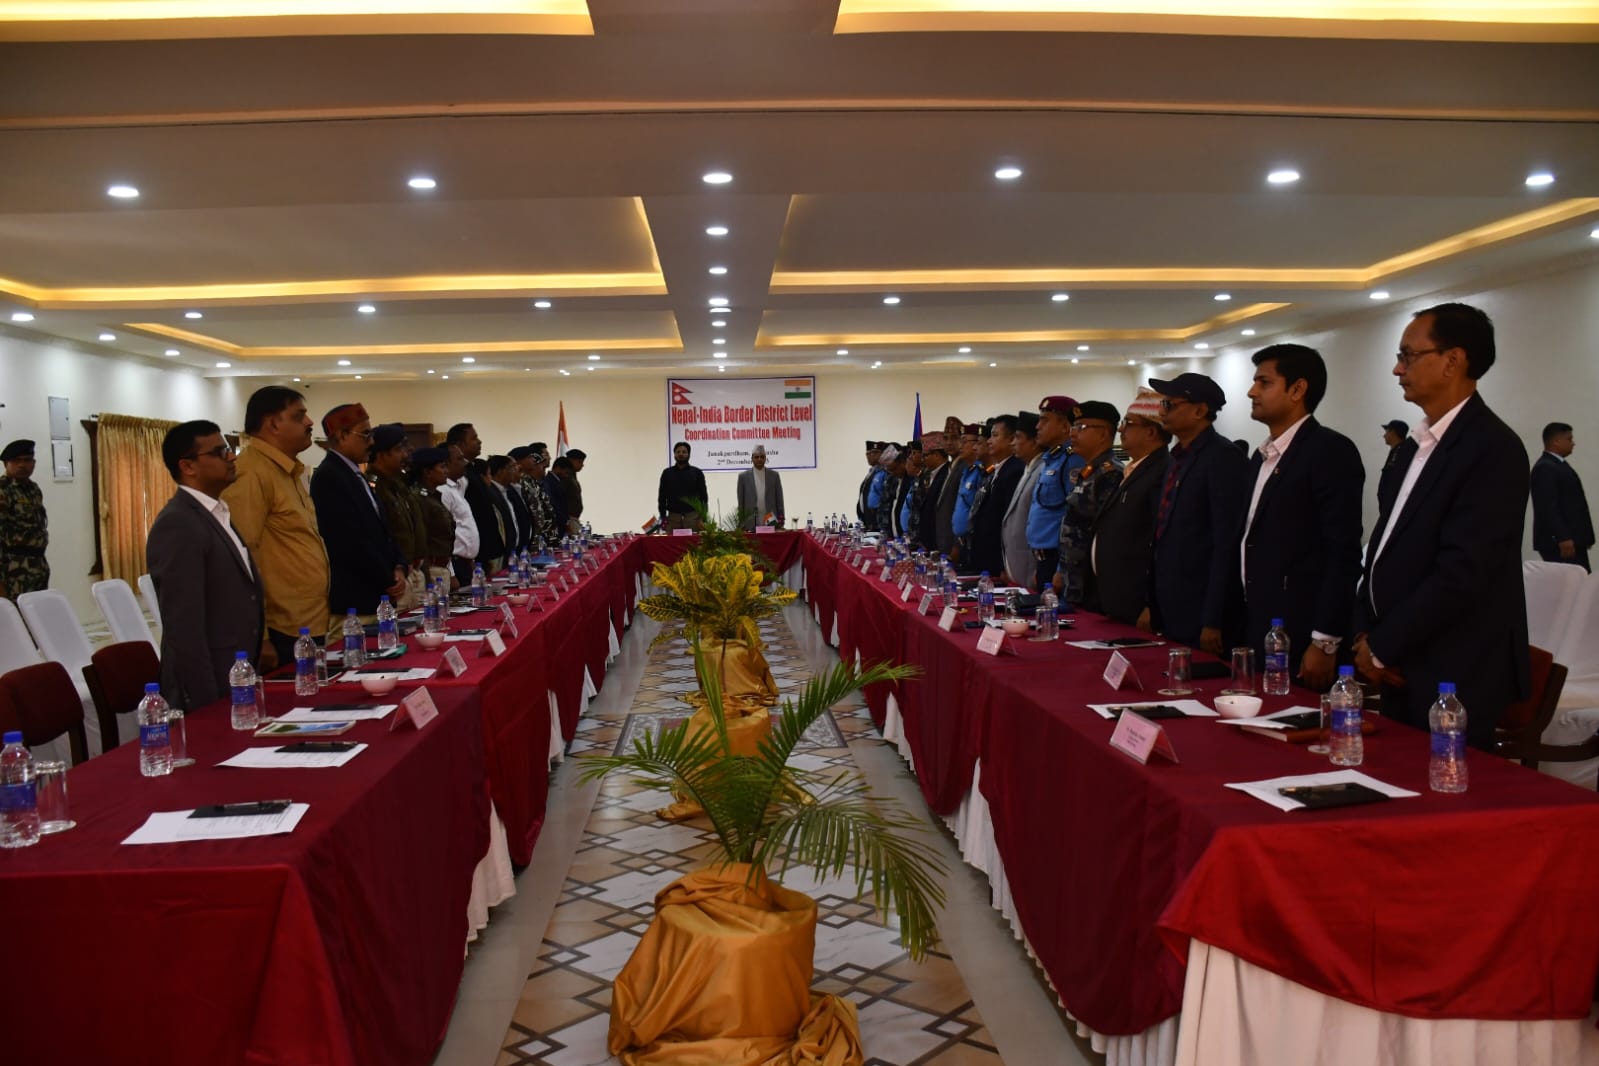 भारत नेपाल सीमा समन्वय समिति की बैठक